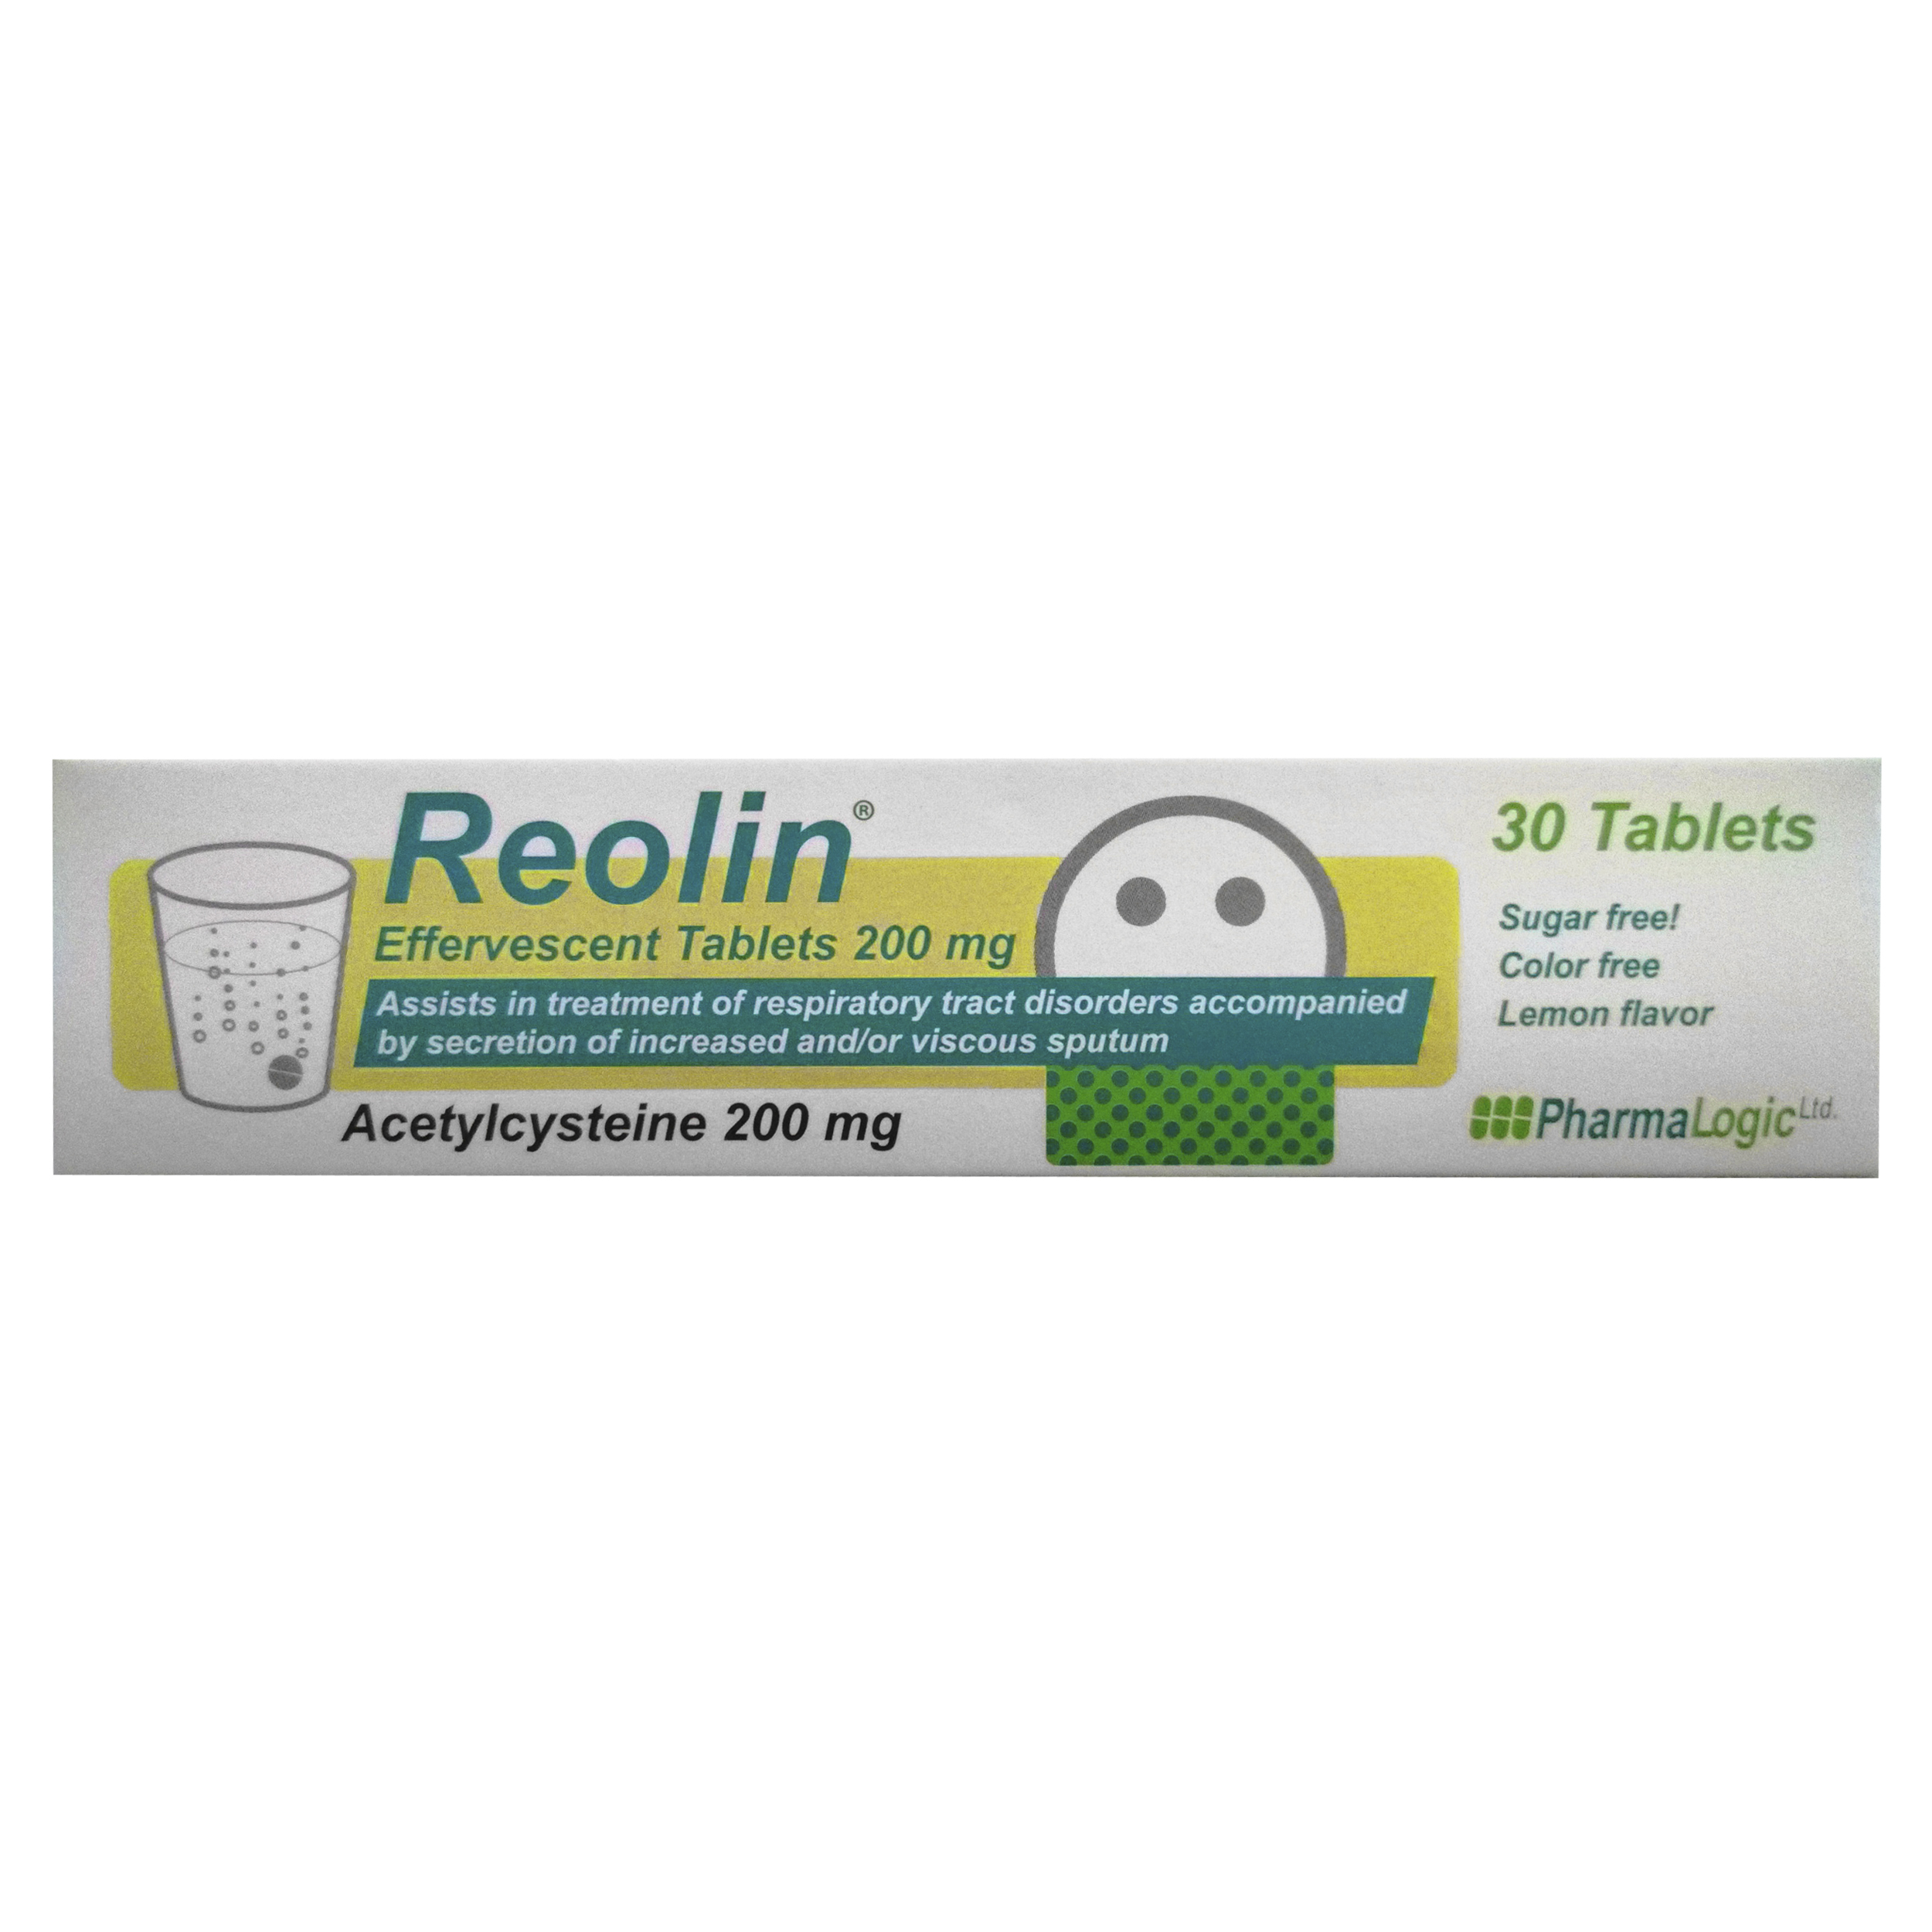 Reolin - image 0